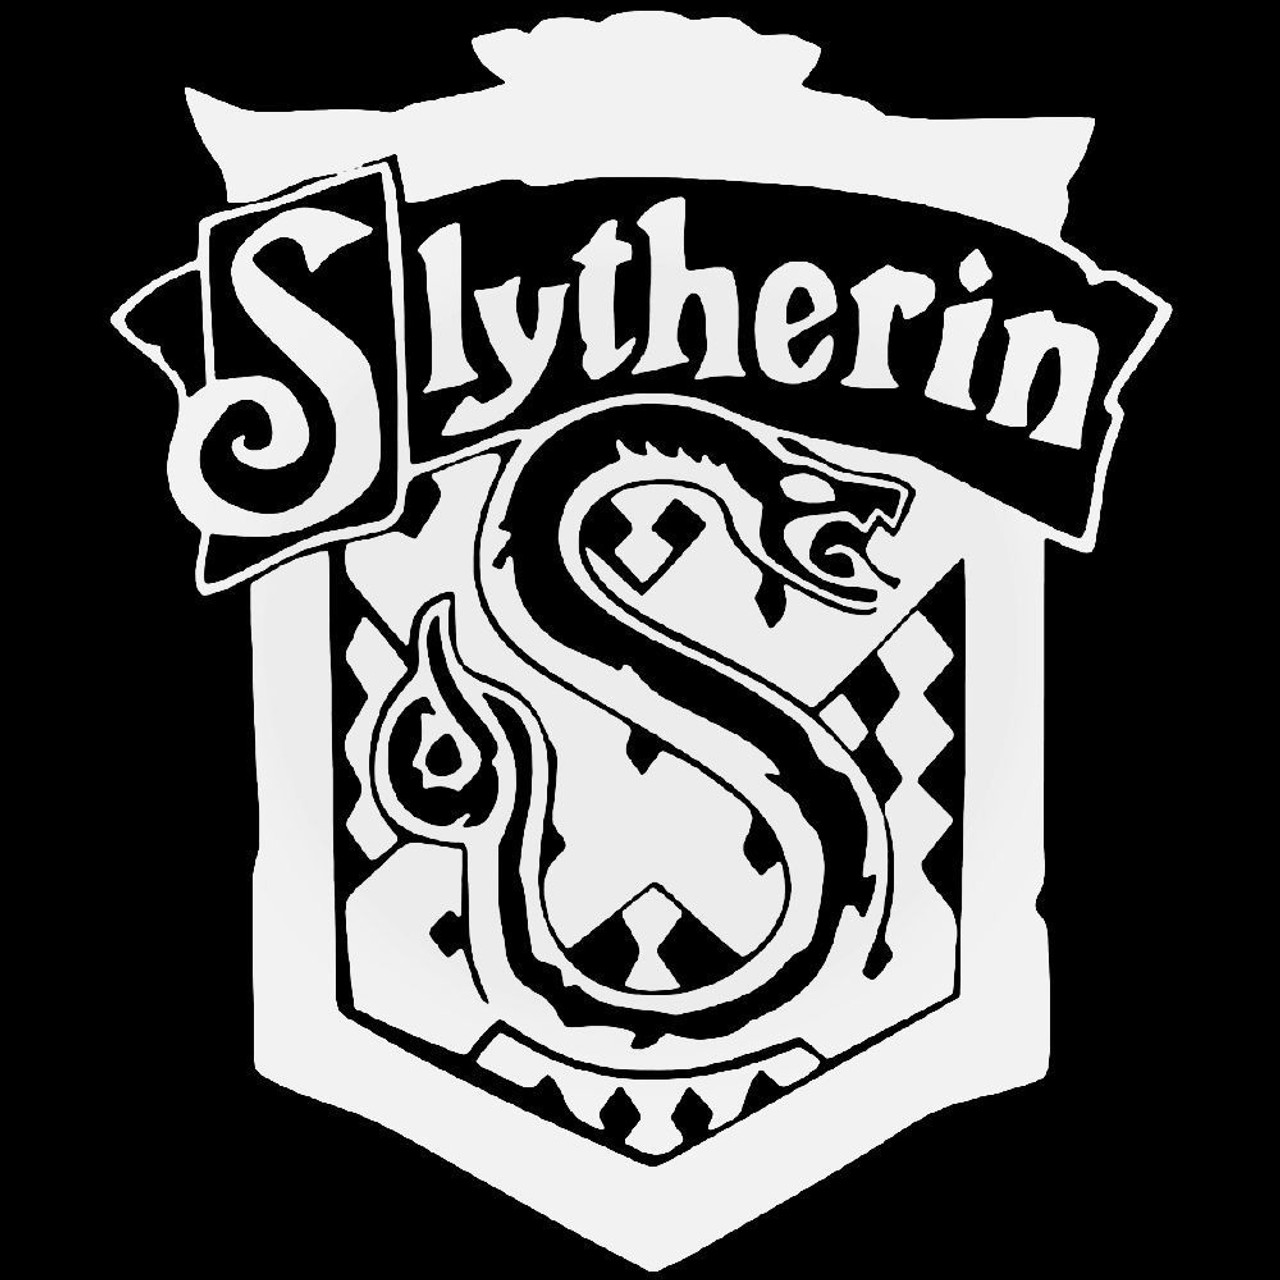 Slytherin House Harry Potter Vinyl Decal Sticker